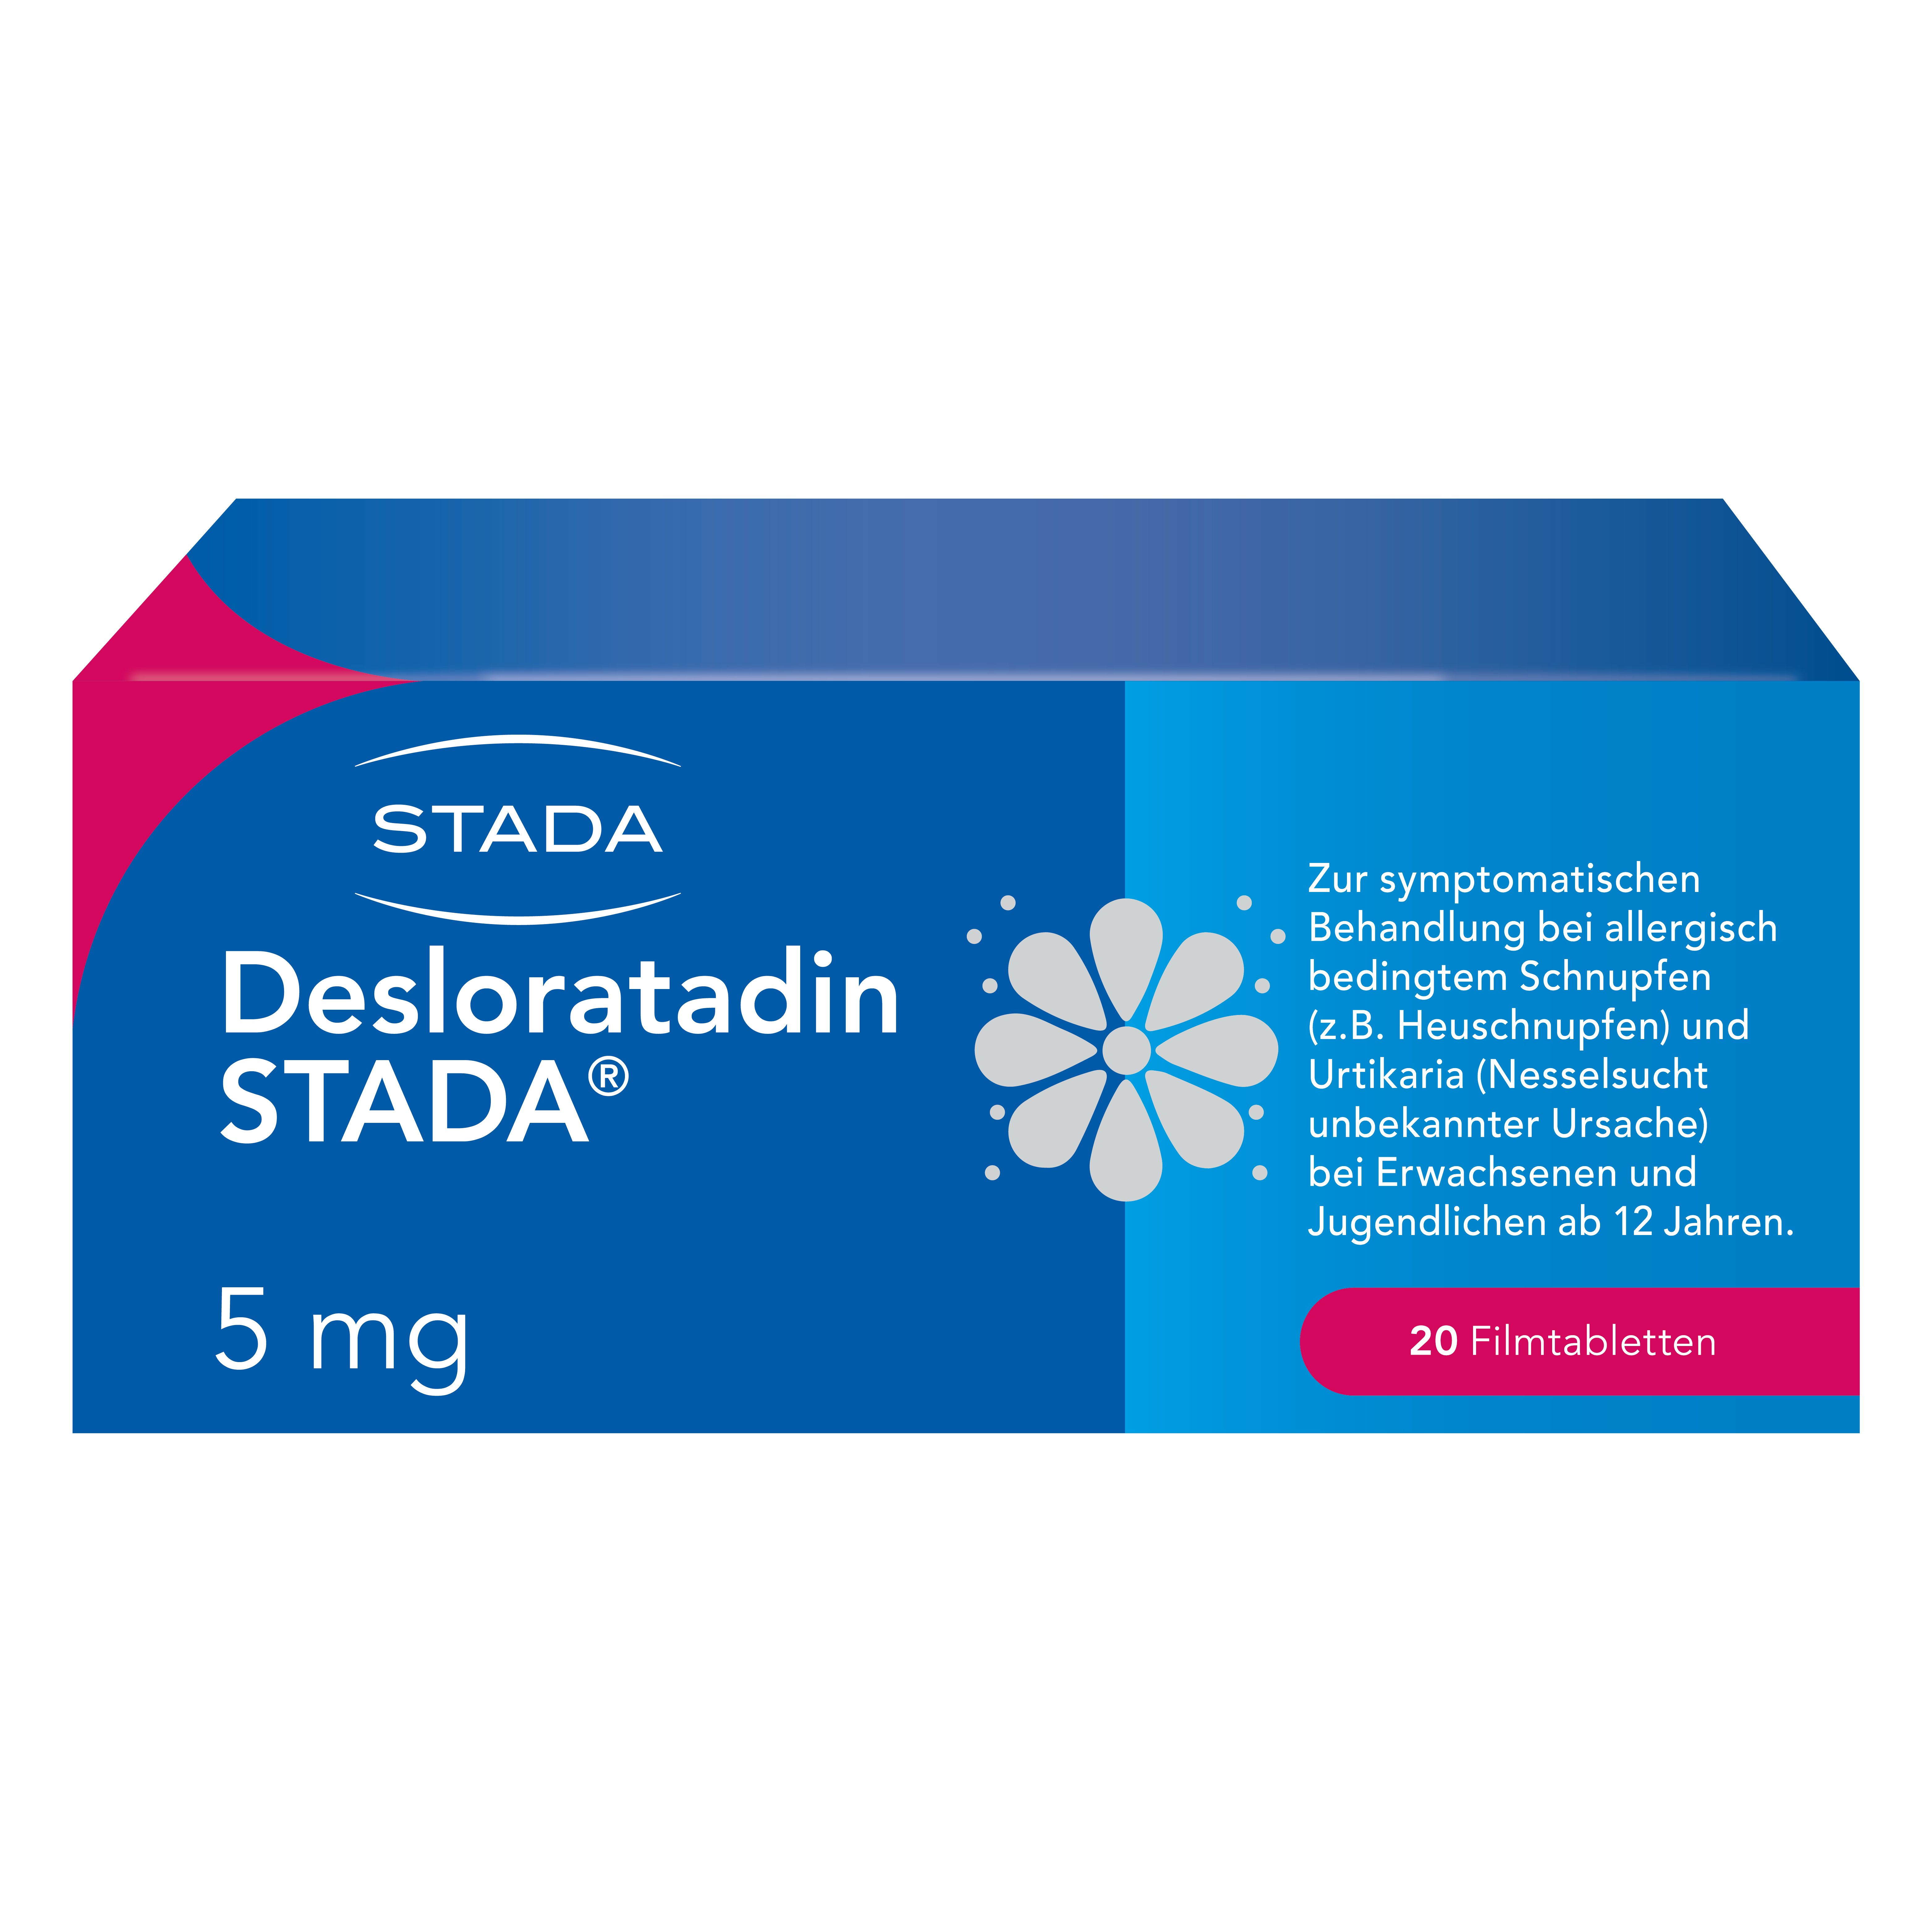 Desloratadin STADA® 5 mg Filmtabletten, zur symptomatischen Behandlung allergischer Erkrankungen wie Heuschnupfen